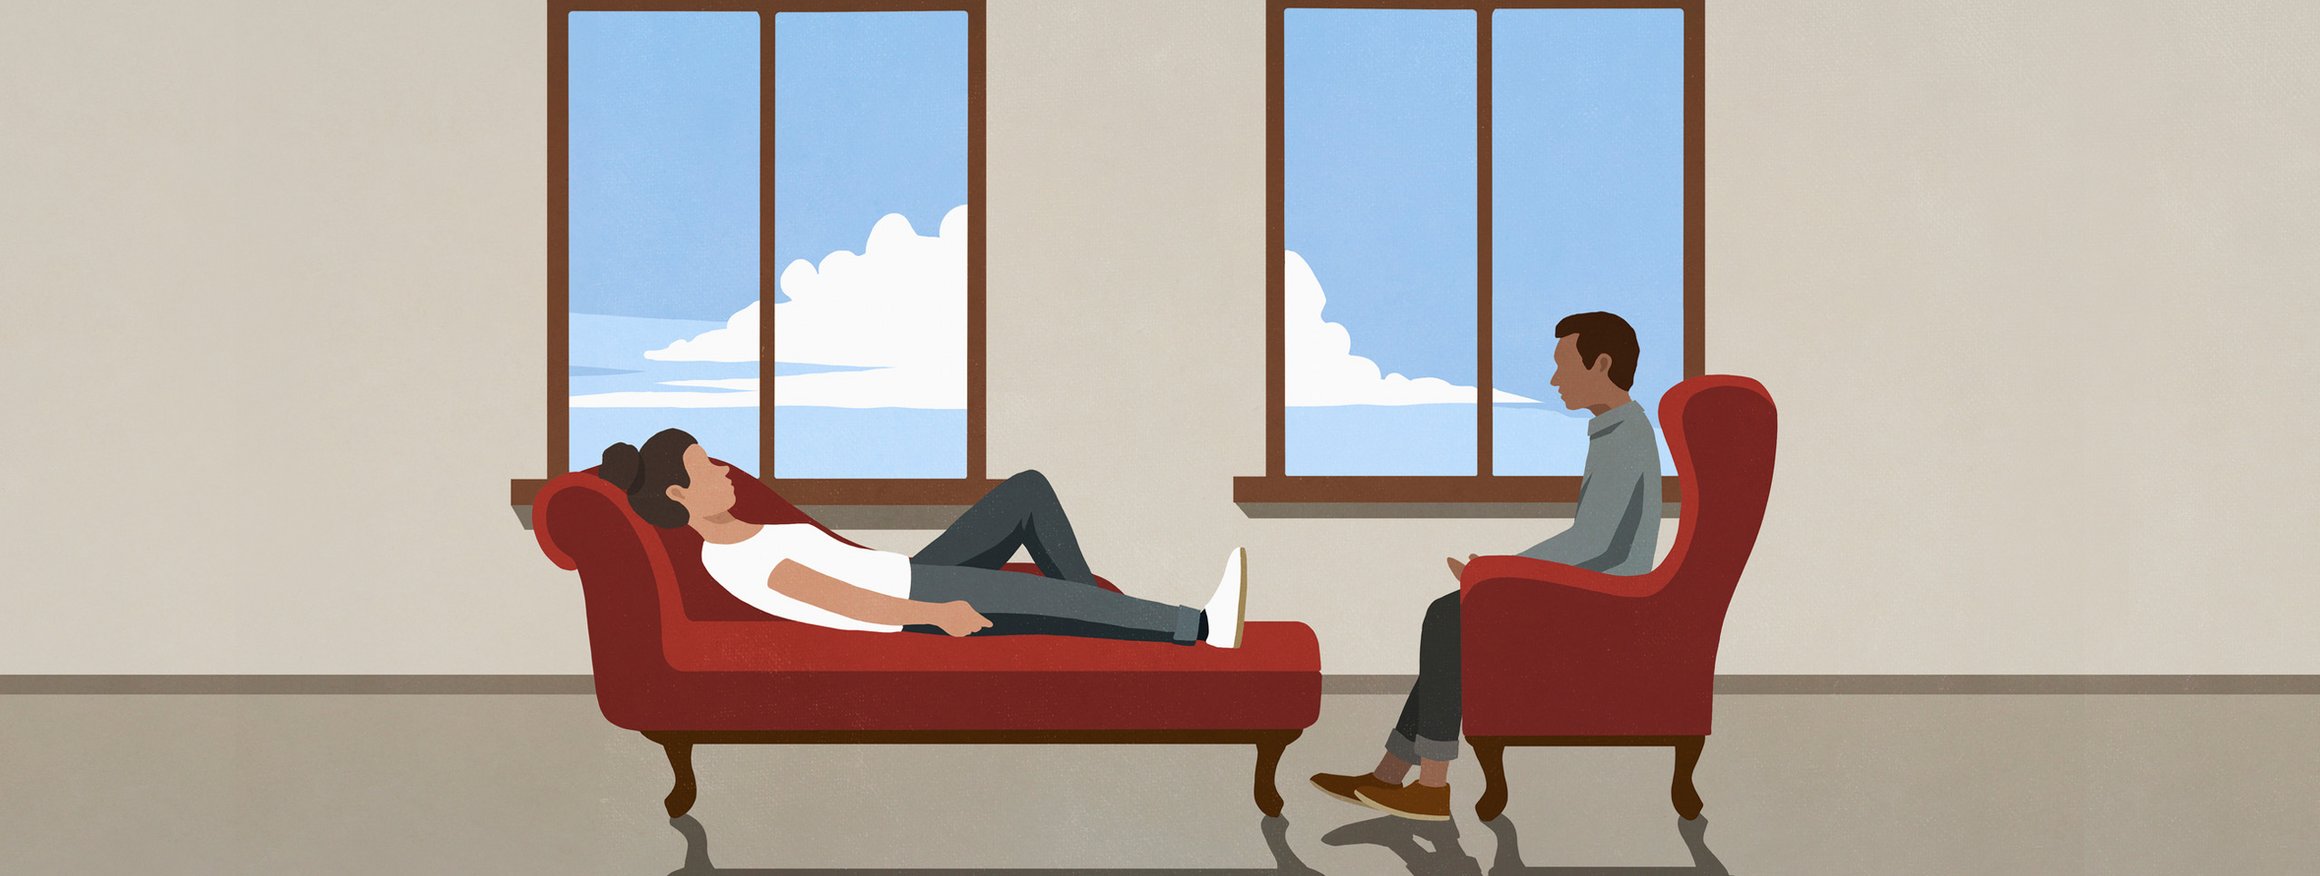 Eine Klientin liegt bei einer Behandlung bei ihrem Therapeuten auf der Couch, während er auf einem Sessel sitzt und zuhört